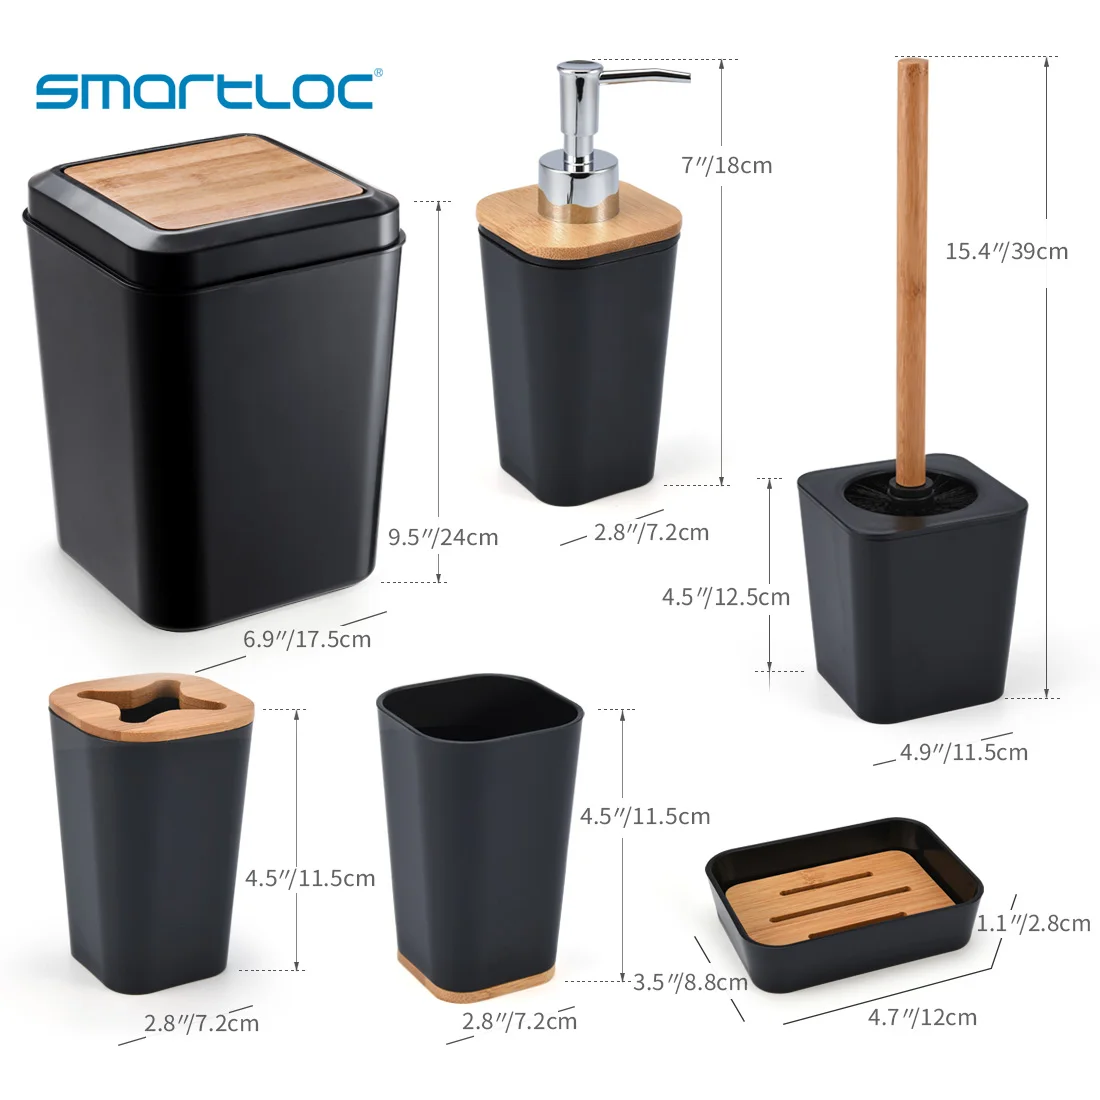 Smartloc 6 шт. пластик аксессуары для ванной комнаты Набор держатель для зубной пасты и для зубной щетки Диспенсер Чехол мыльница туалет душ хранения